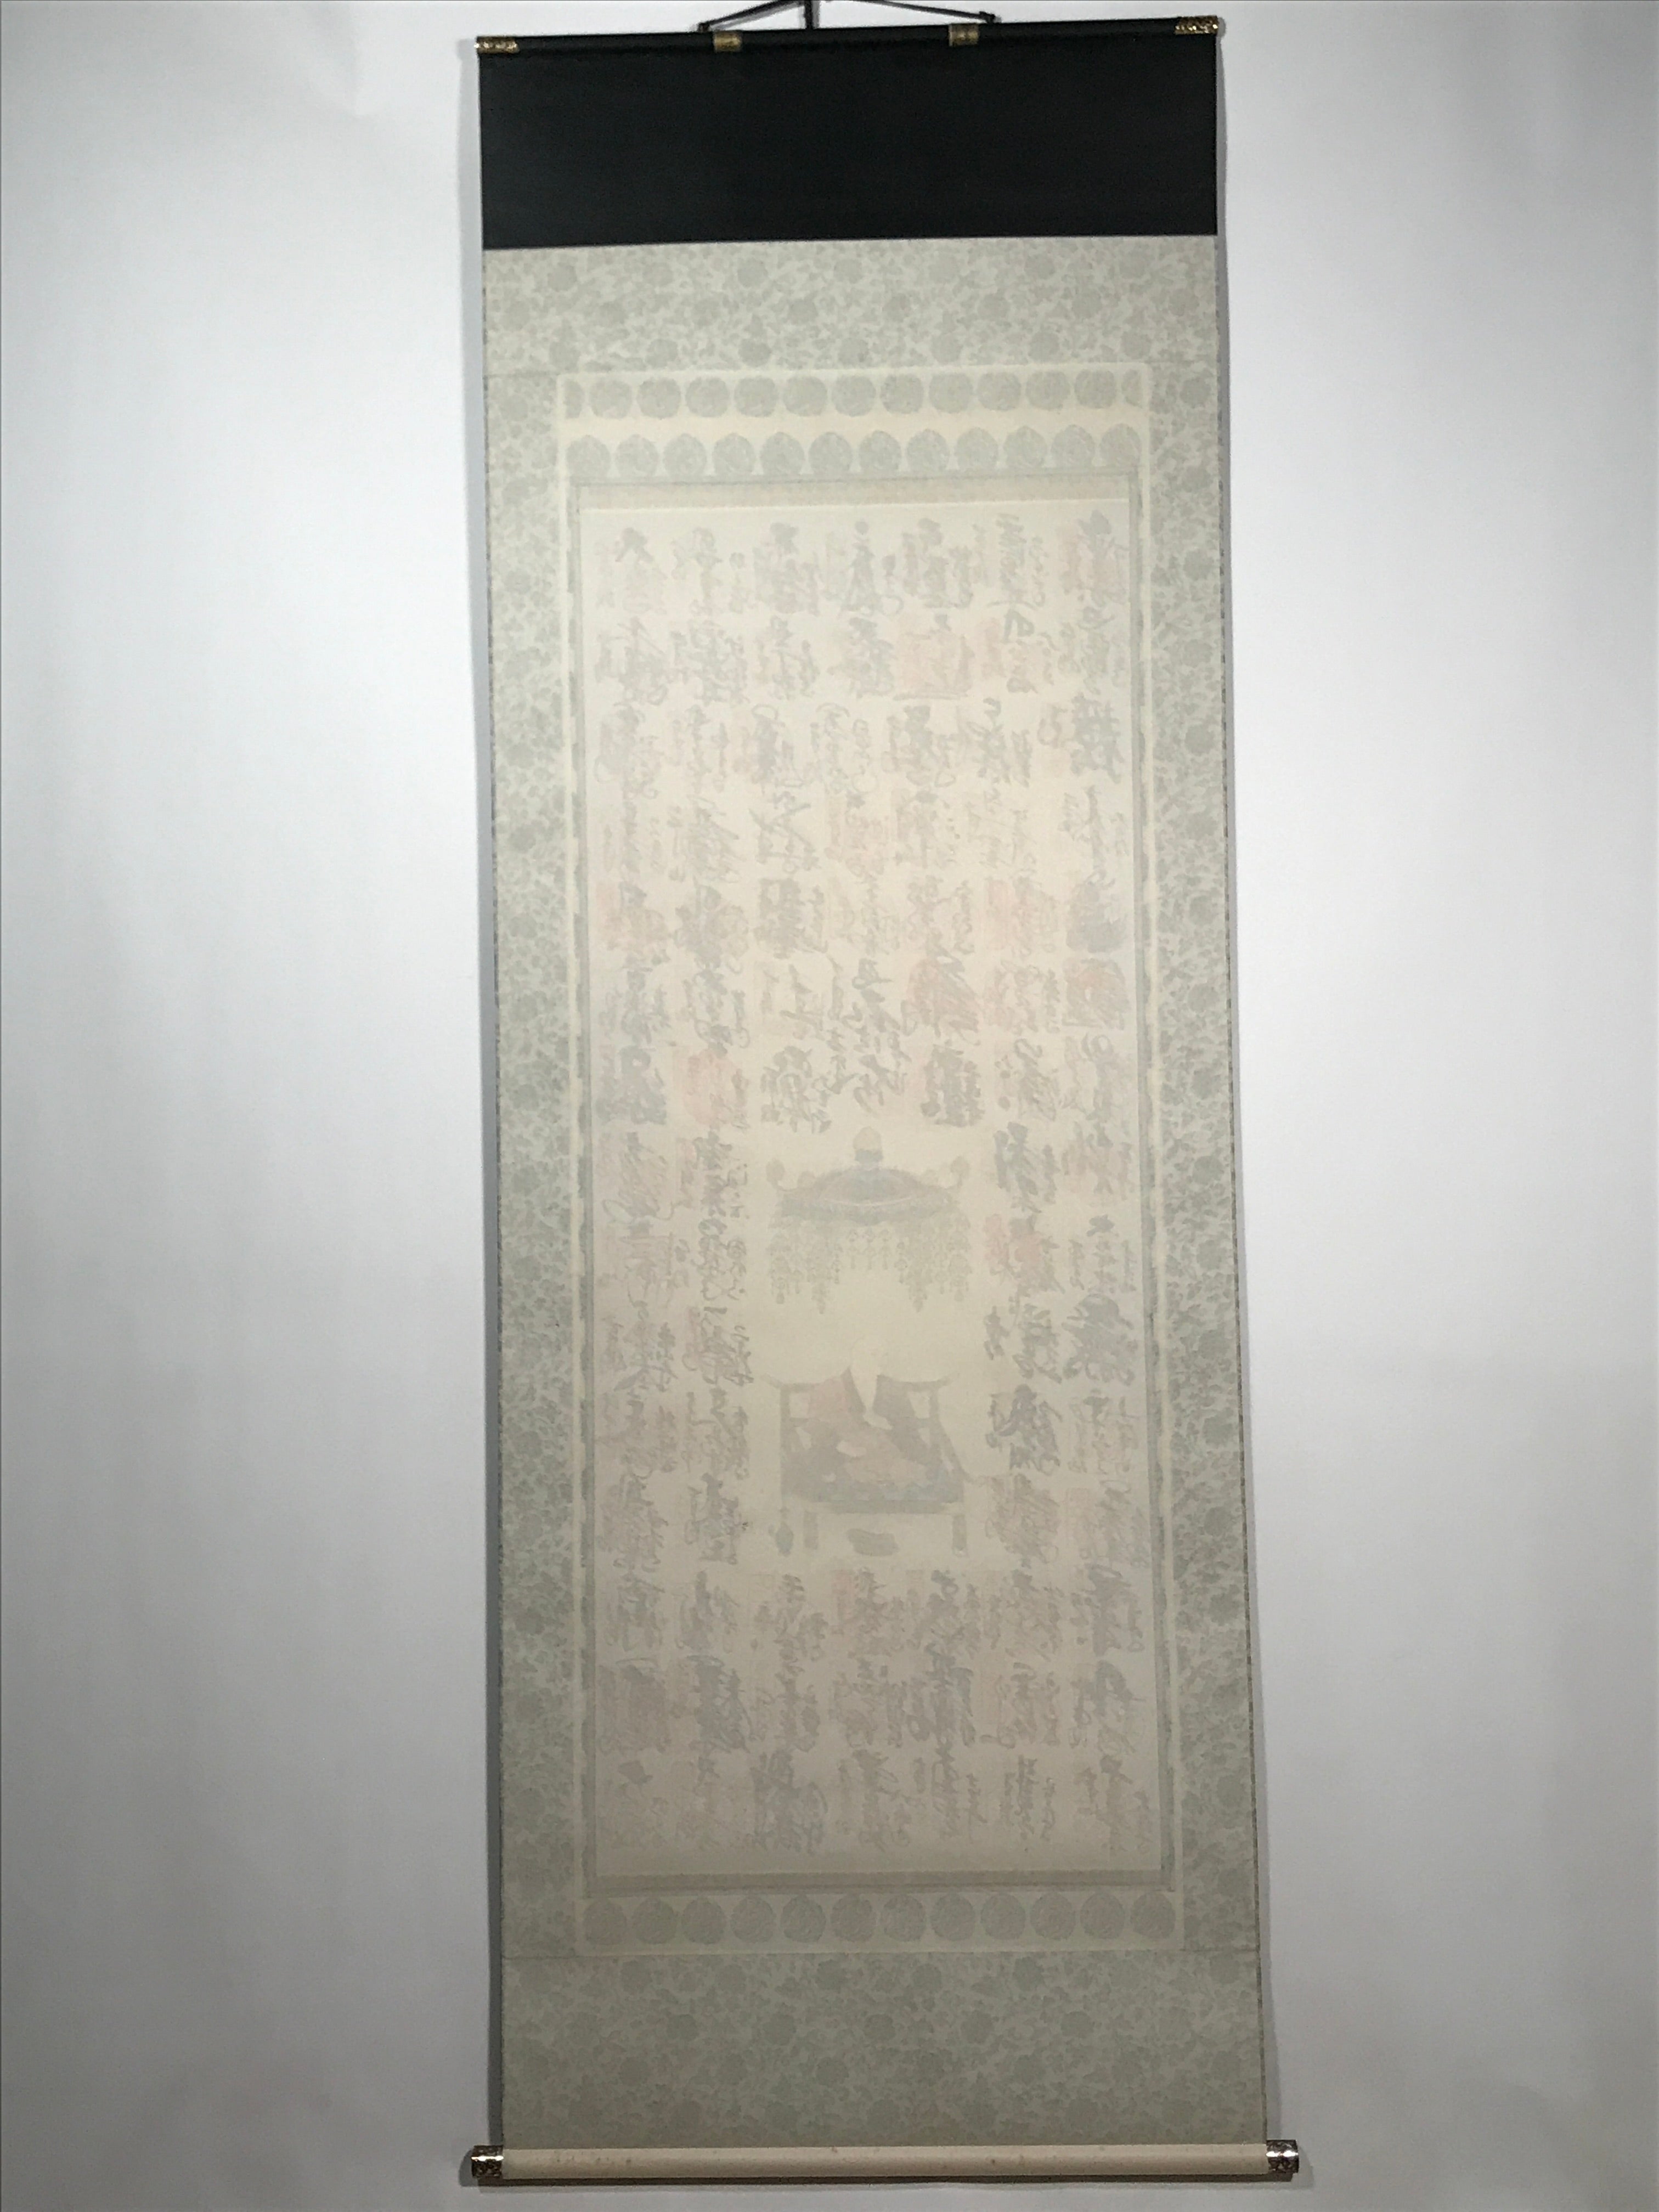 Japanese Hanging Scroll Vtg Shikoku 88 Sacred Places Goshuin Buddhist SC856